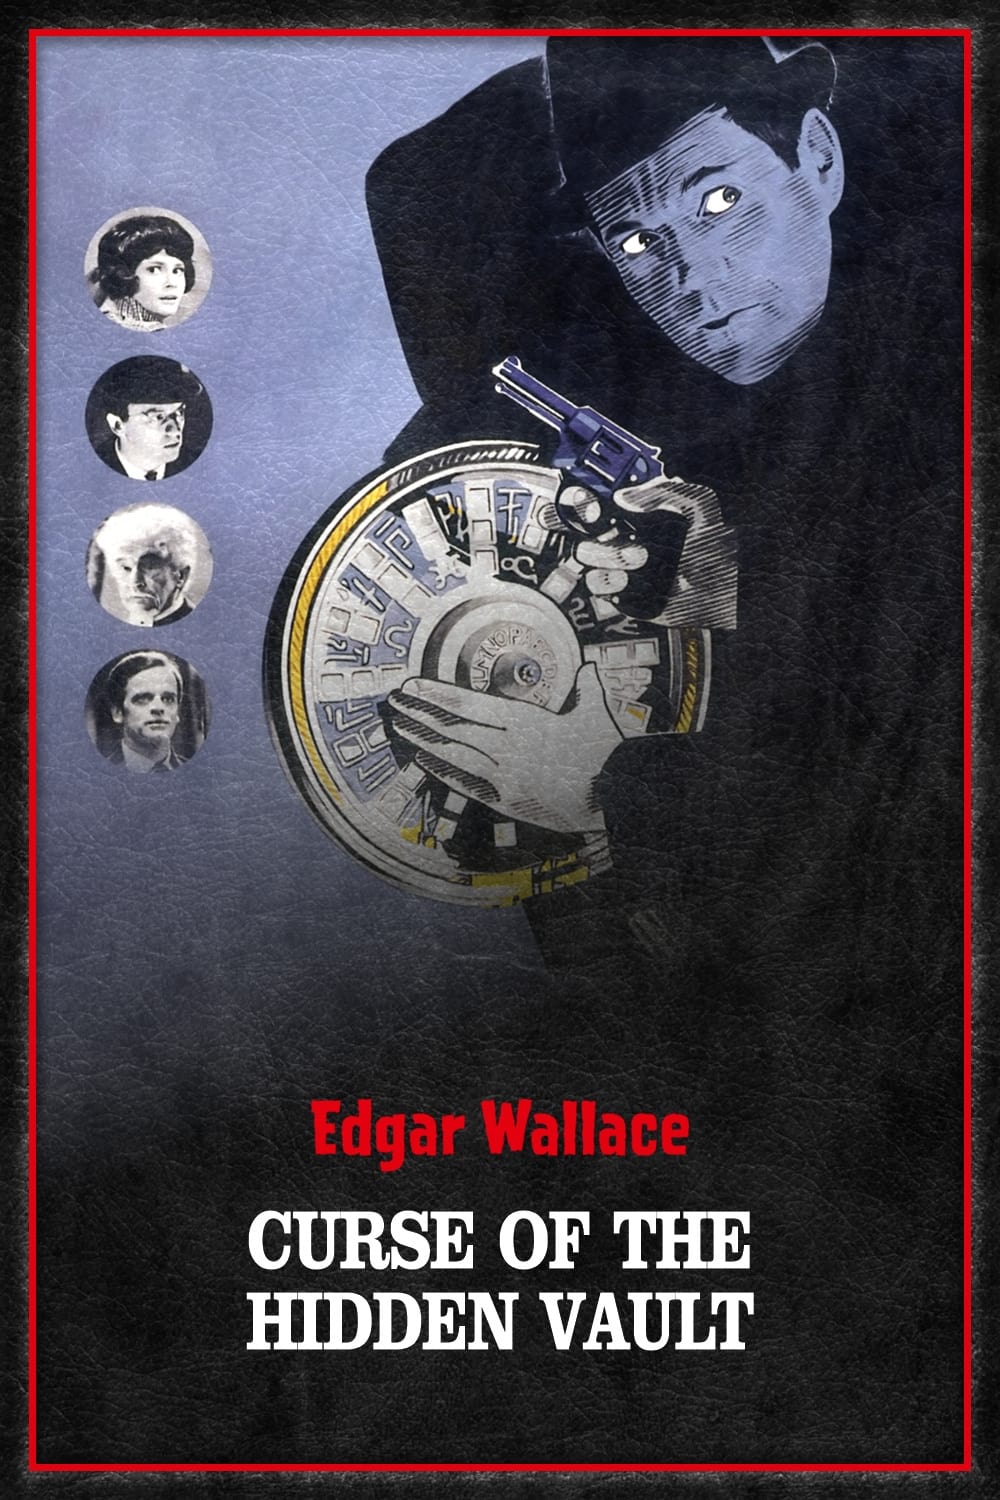 The Curse of the Hidden Vault (1964)